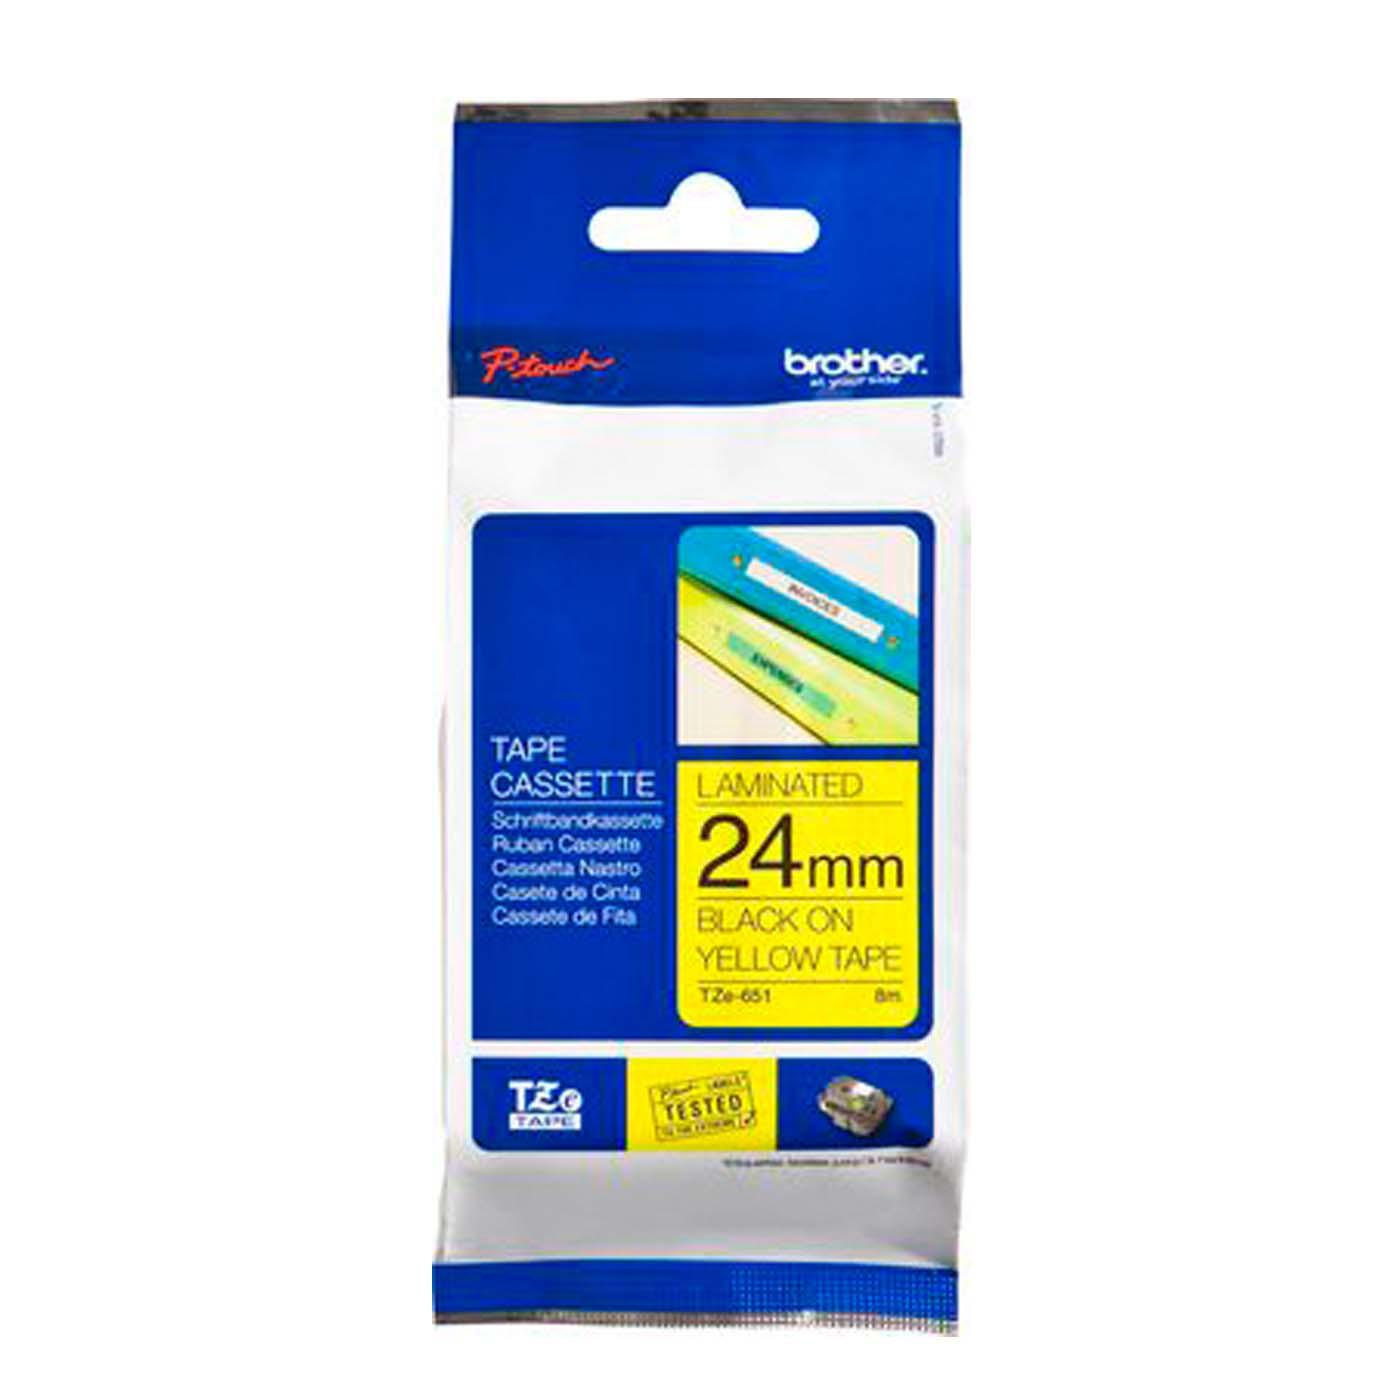 Cassette à ruban pour étiqueteuse Brother, 24mm x 8m, P-Touch TZE-651, jaune / police noir